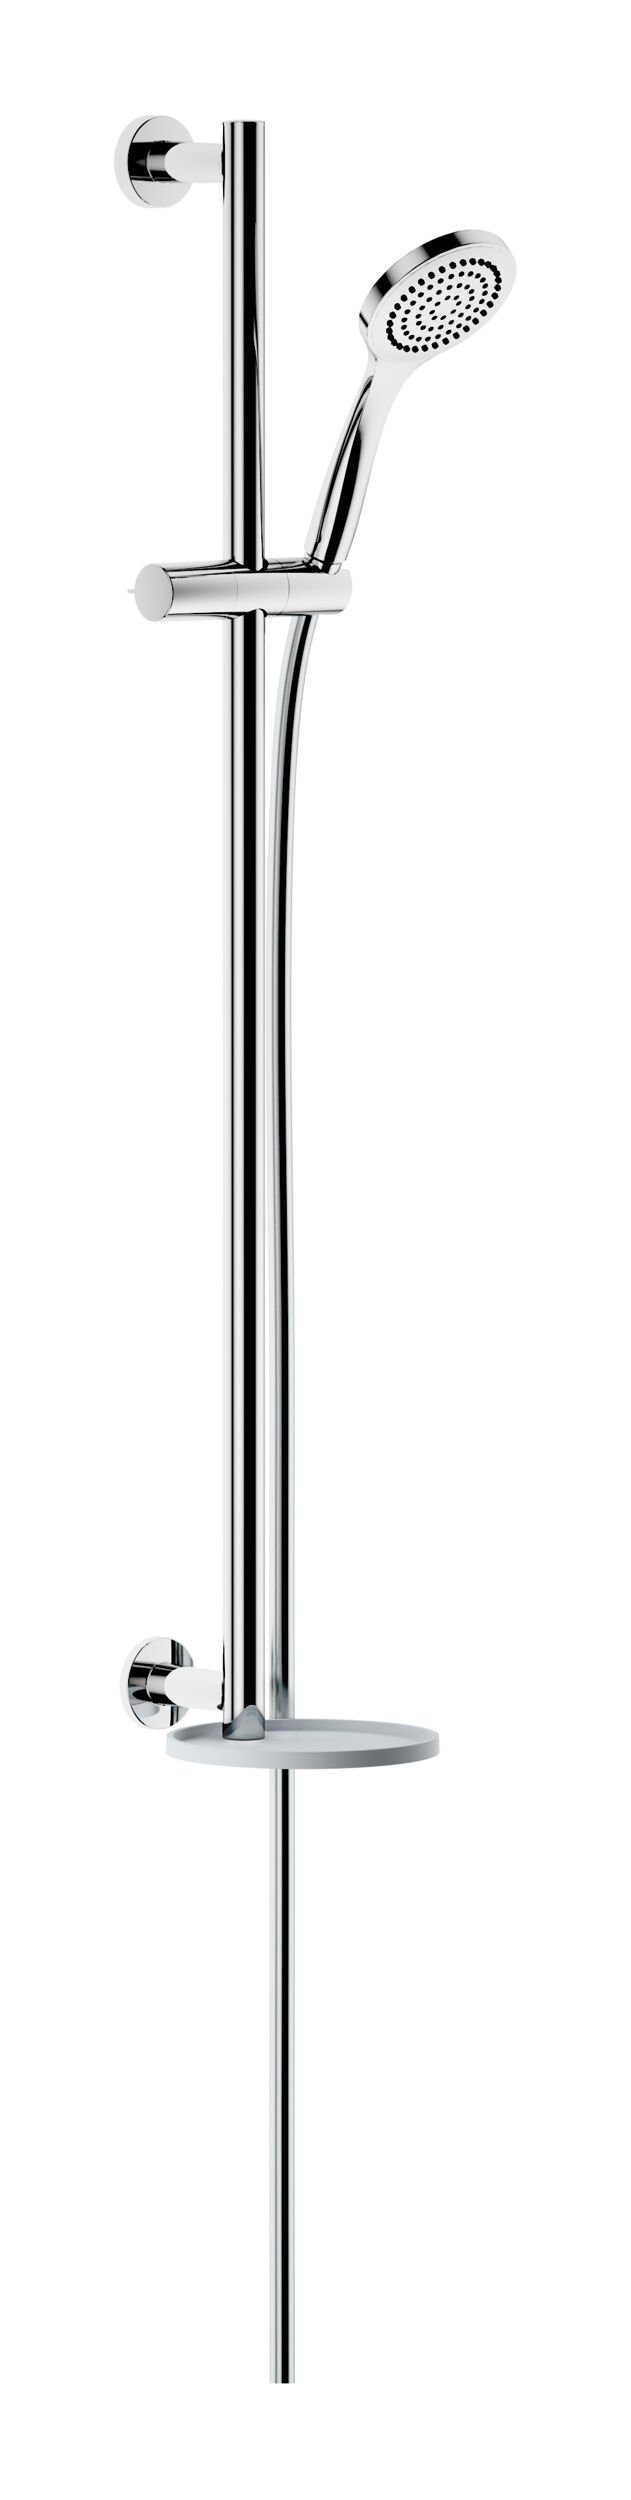 Keuco Brausegarnitur IXMO, Höhe 85.5 cm, 1 Strahlart(en), Brause-Set mit Ablage rund - Verchromt / Weiß